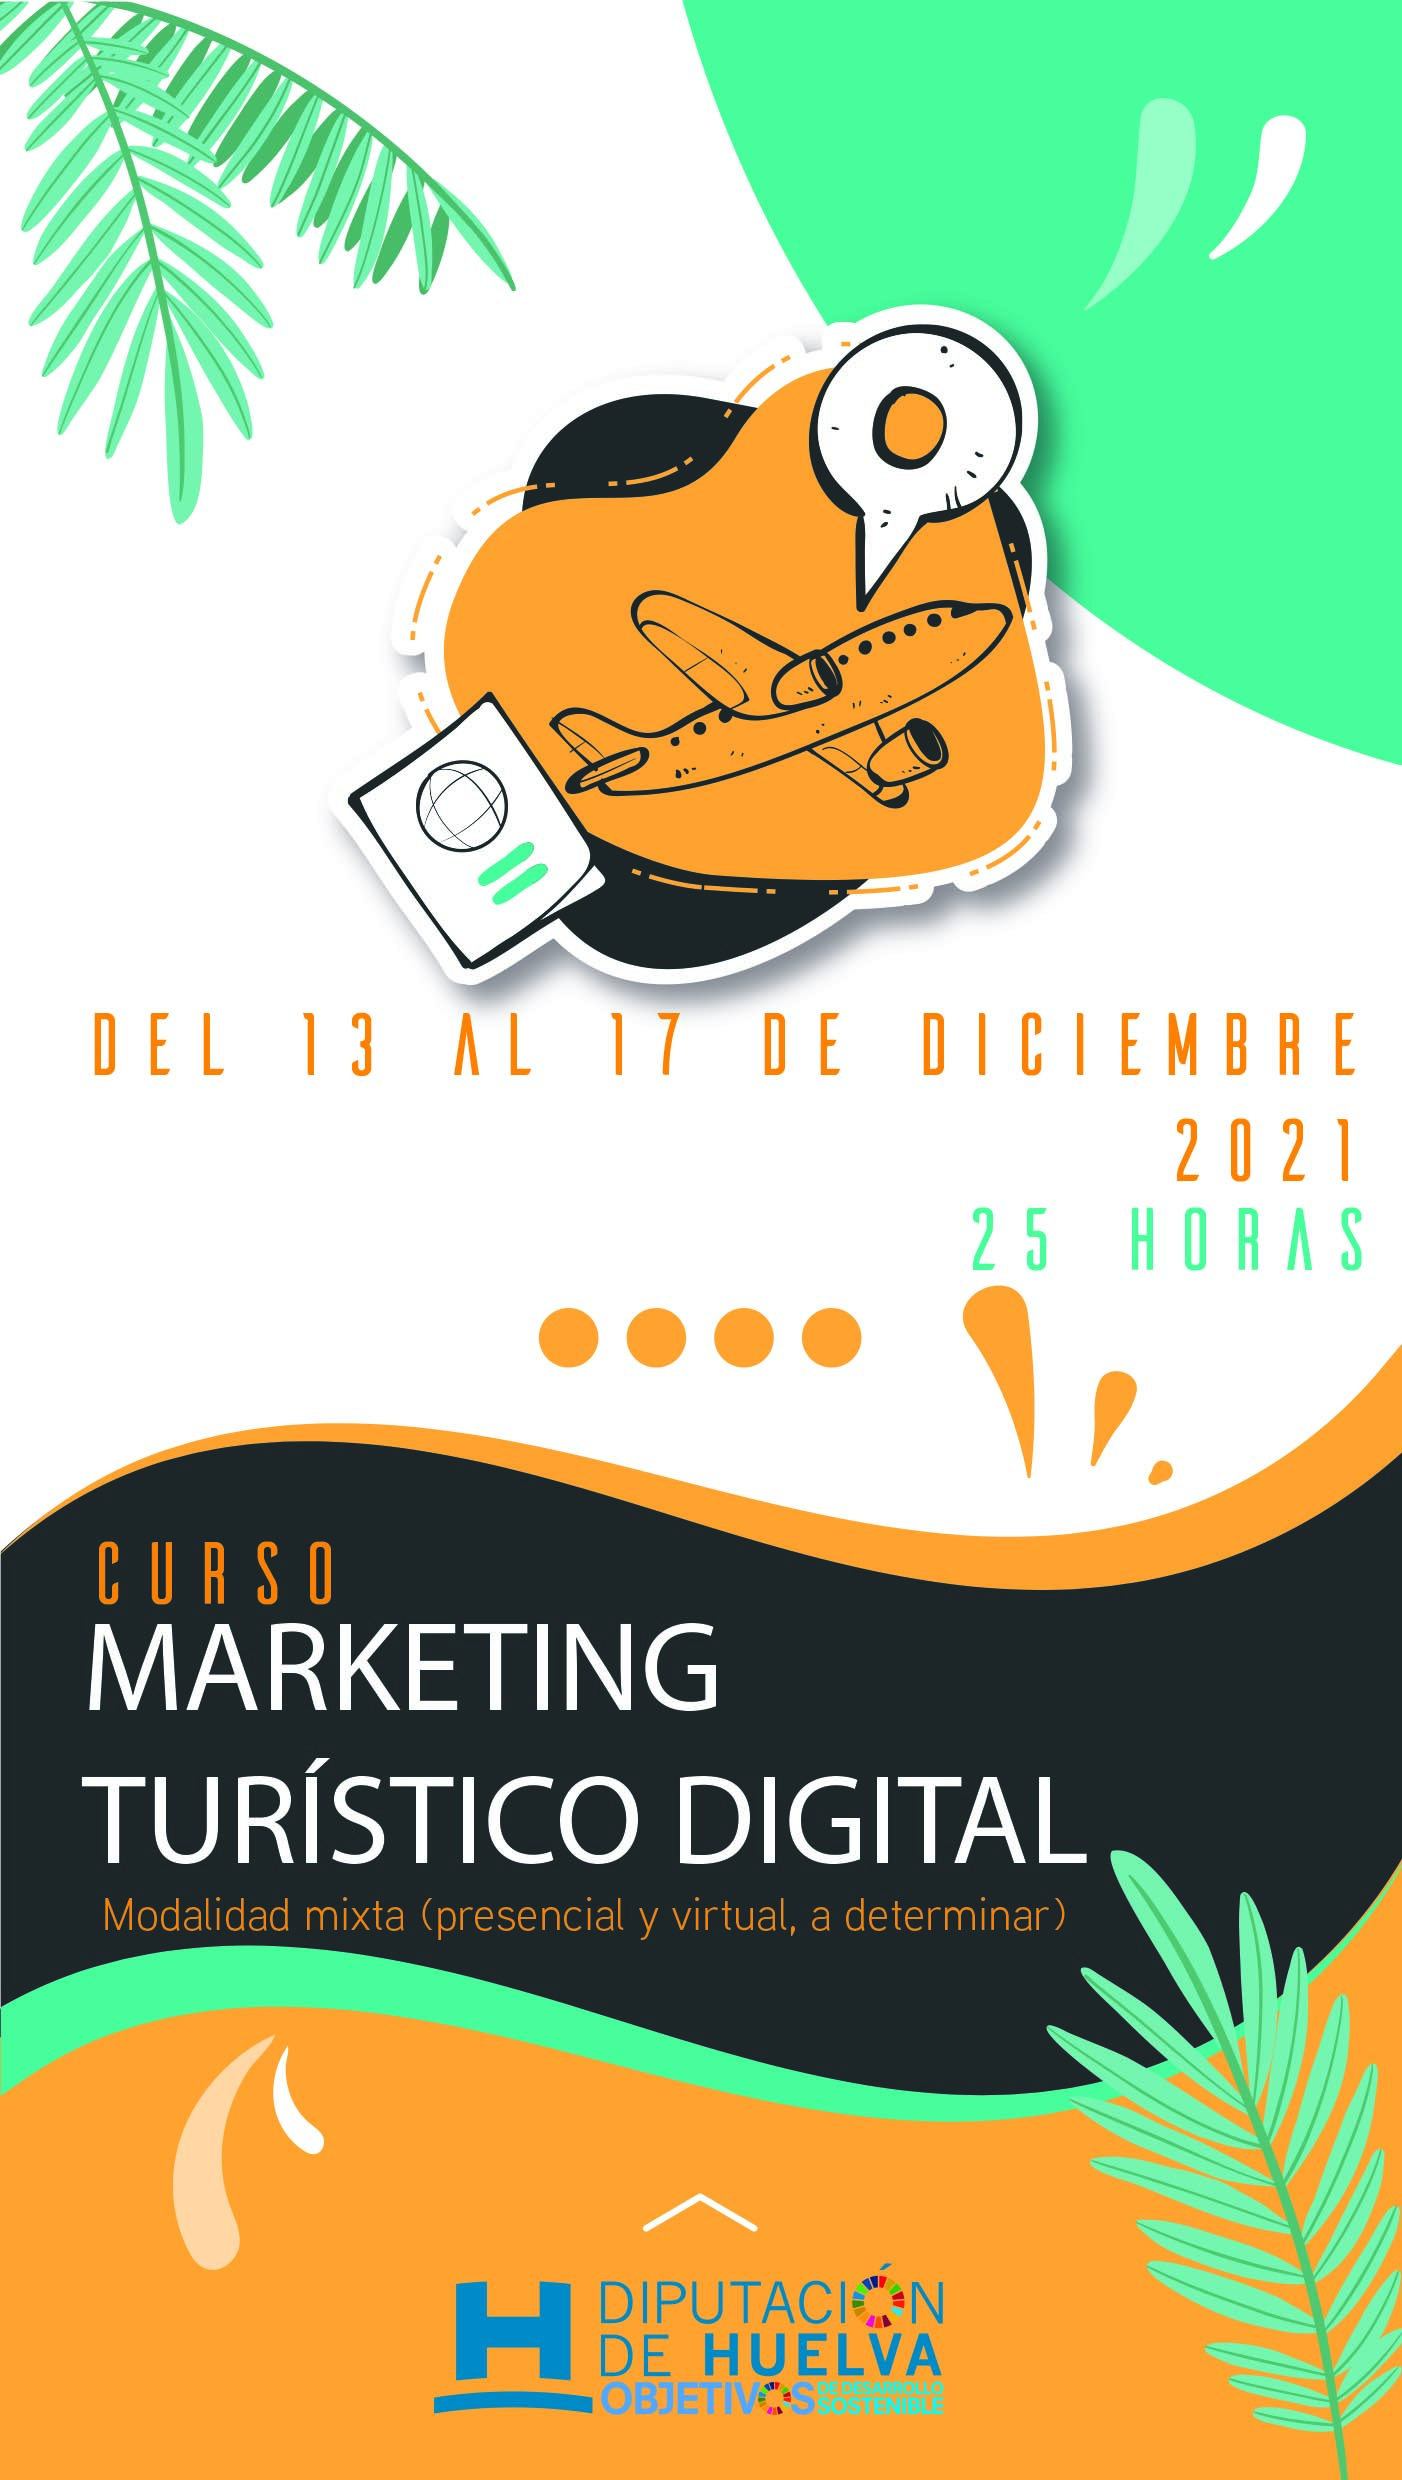 La Diputación convoca un curso de Marketing Turístico Digital